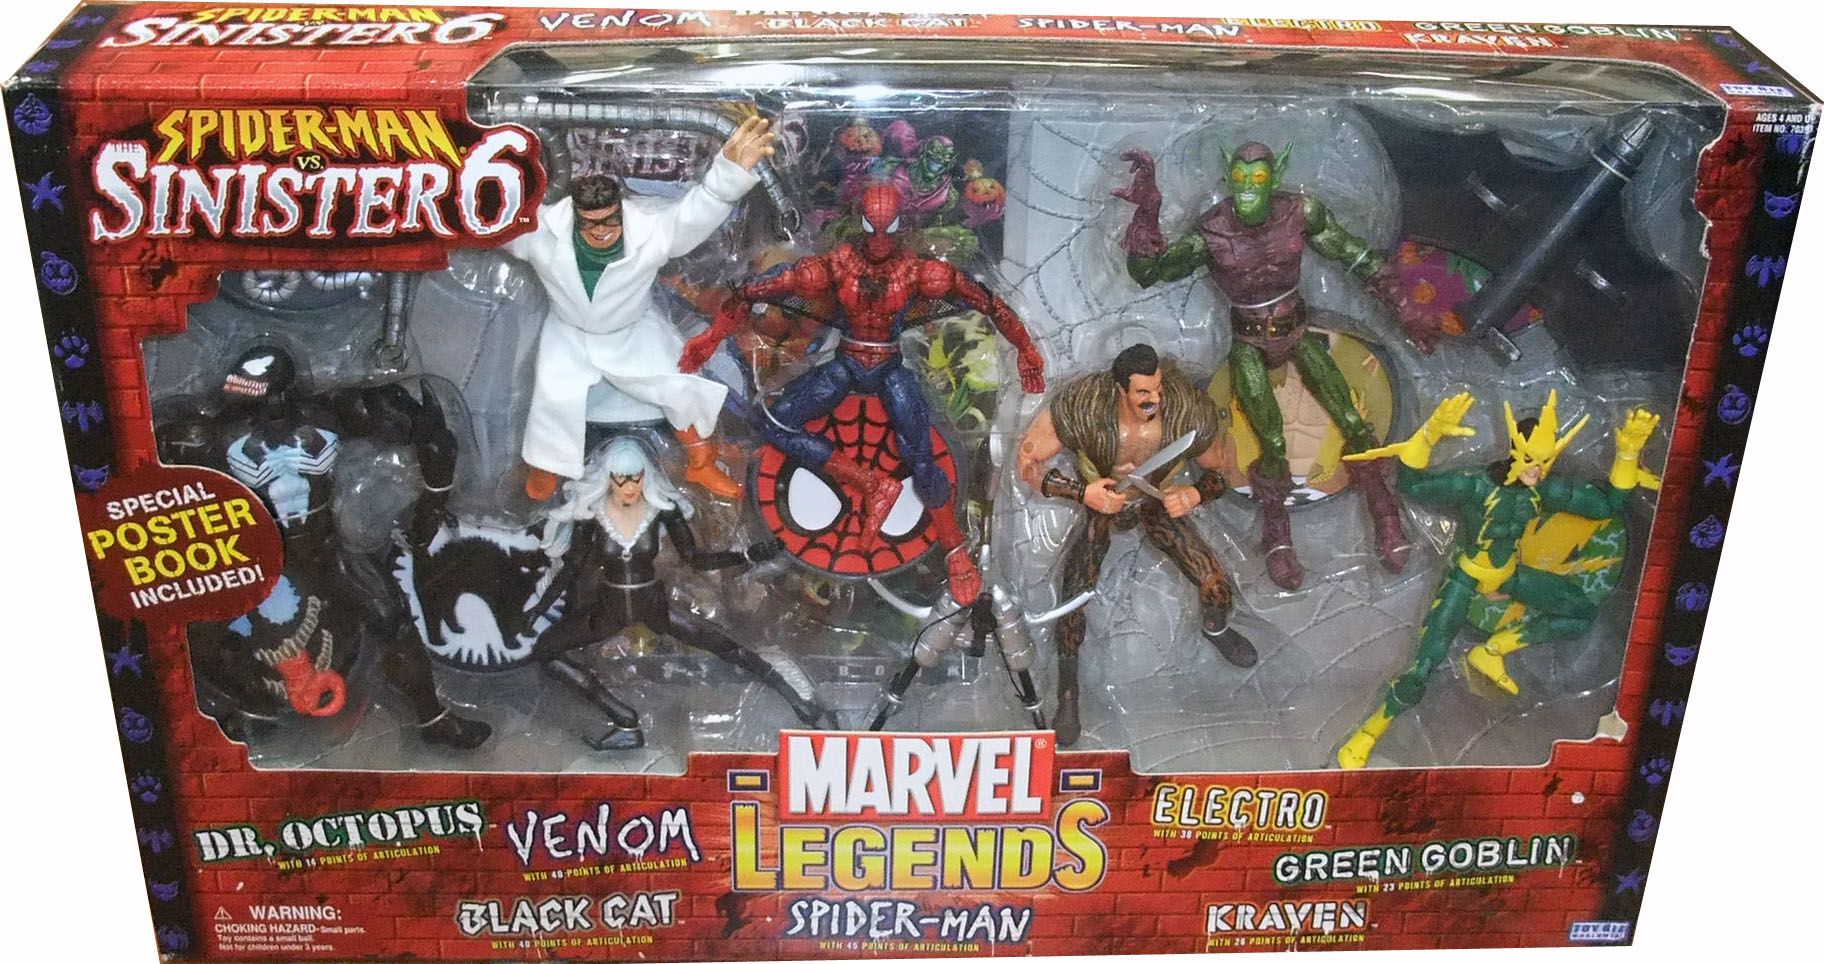 Marvel Legends "Sinister 6" set Dr. Octopus, Kraven, Electro, Green